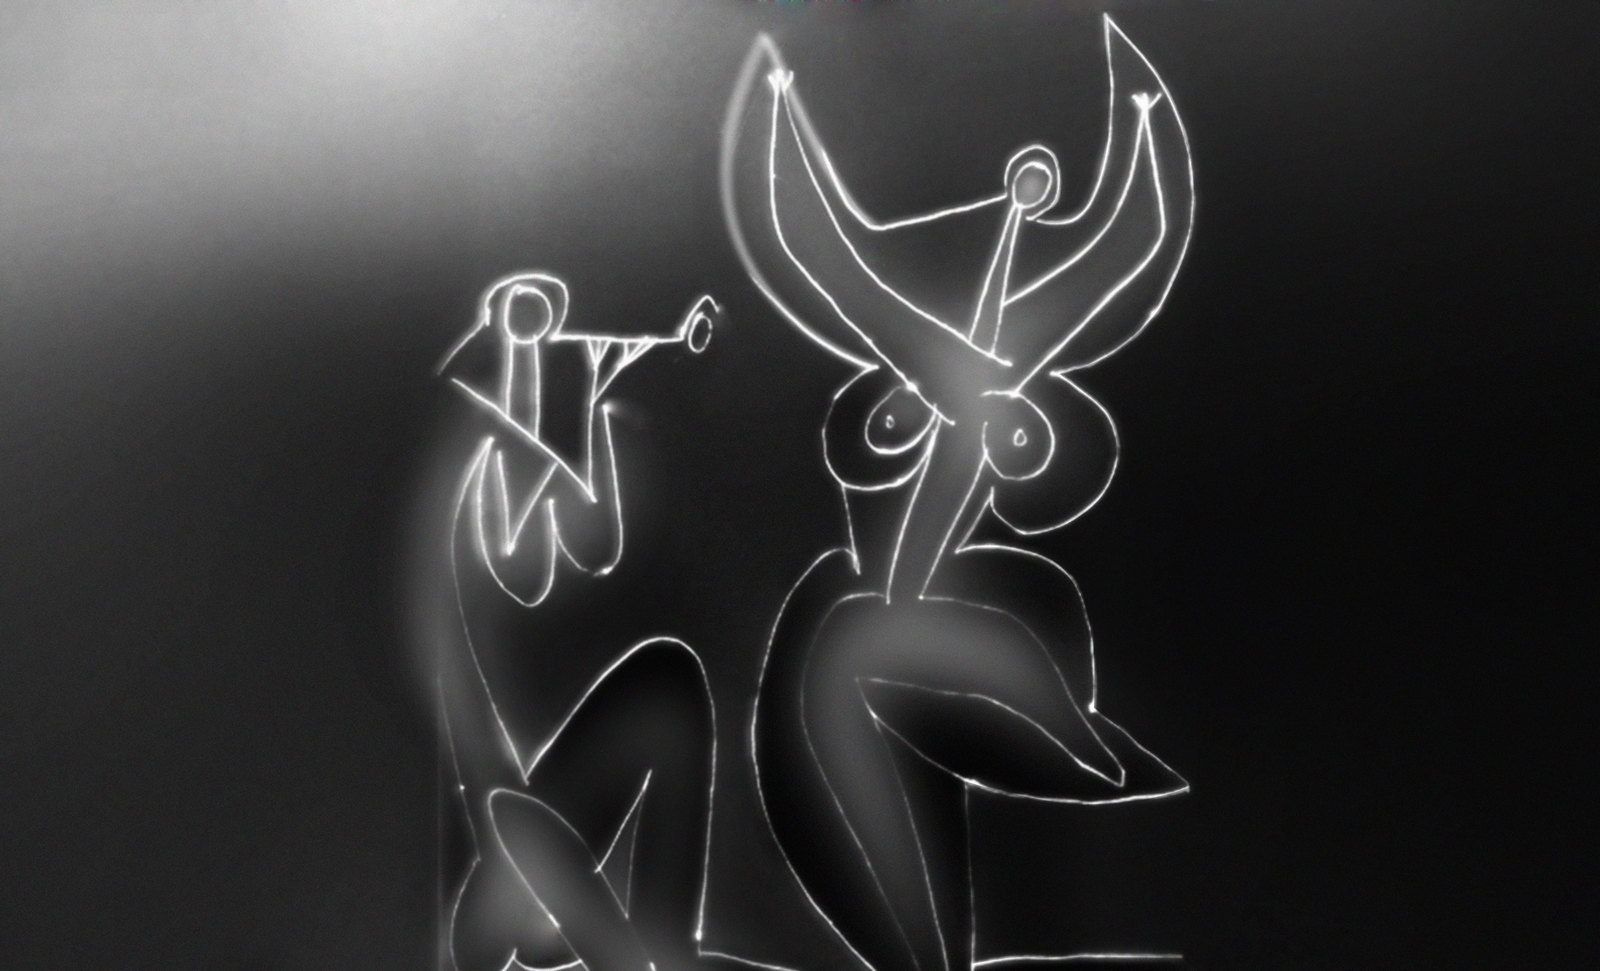 Danzando, pronóstico de Pablo Picasso (1956), encuadre de Francis Bacon (1933).